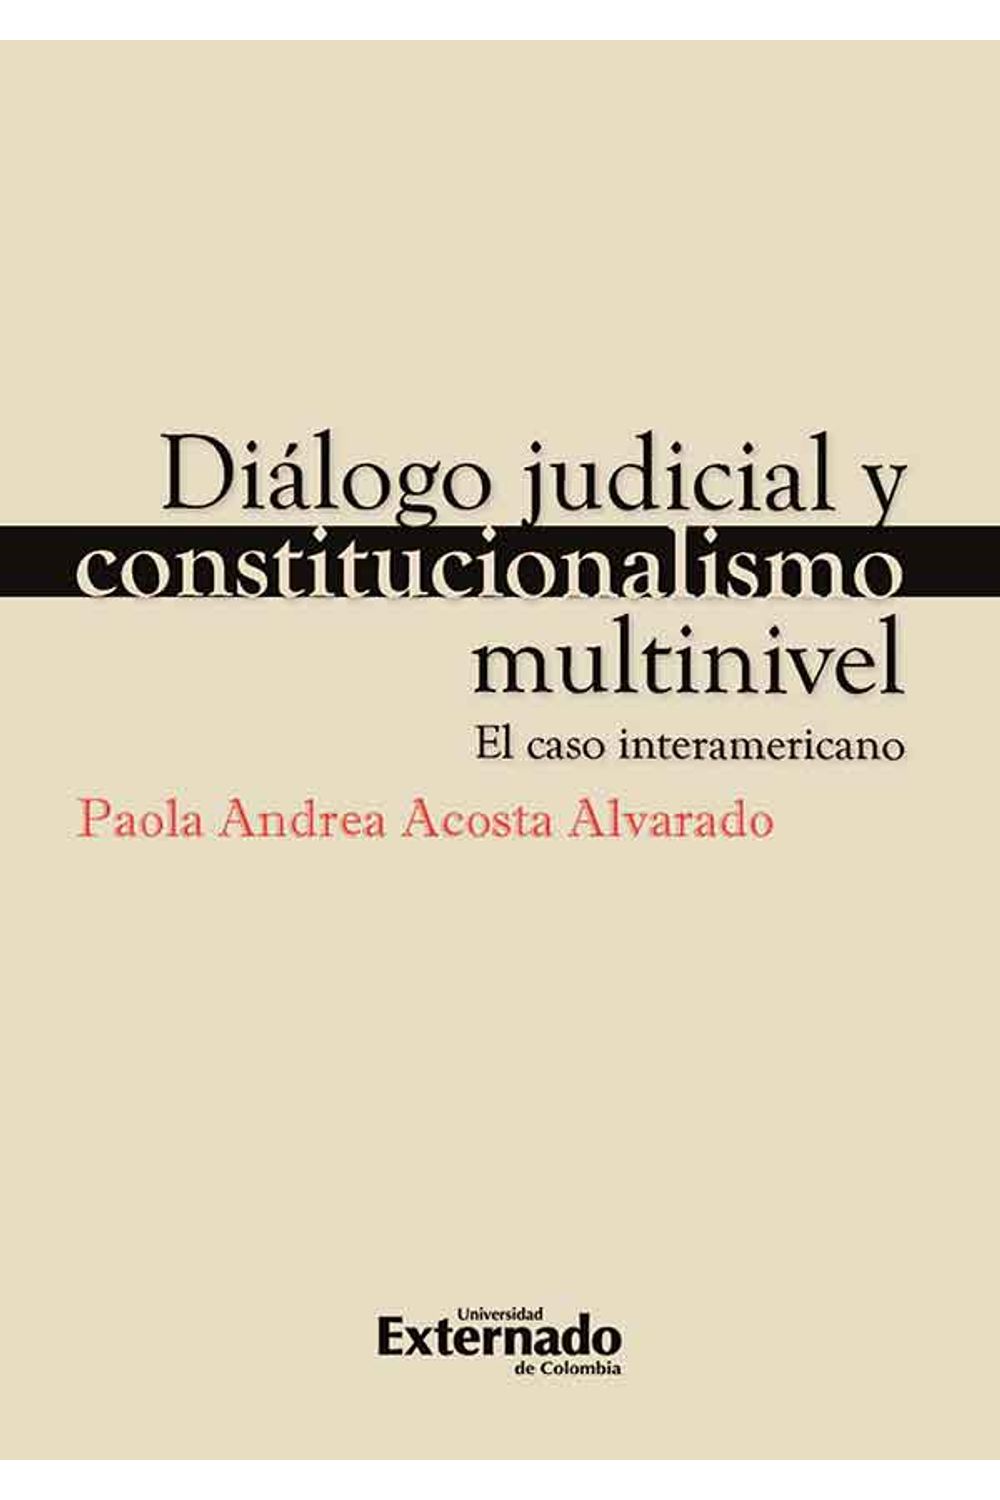 bw-diaacutelogo-judicial-y-constitucionalismo-multinivel-u-externado-de-colombia-9789587723250